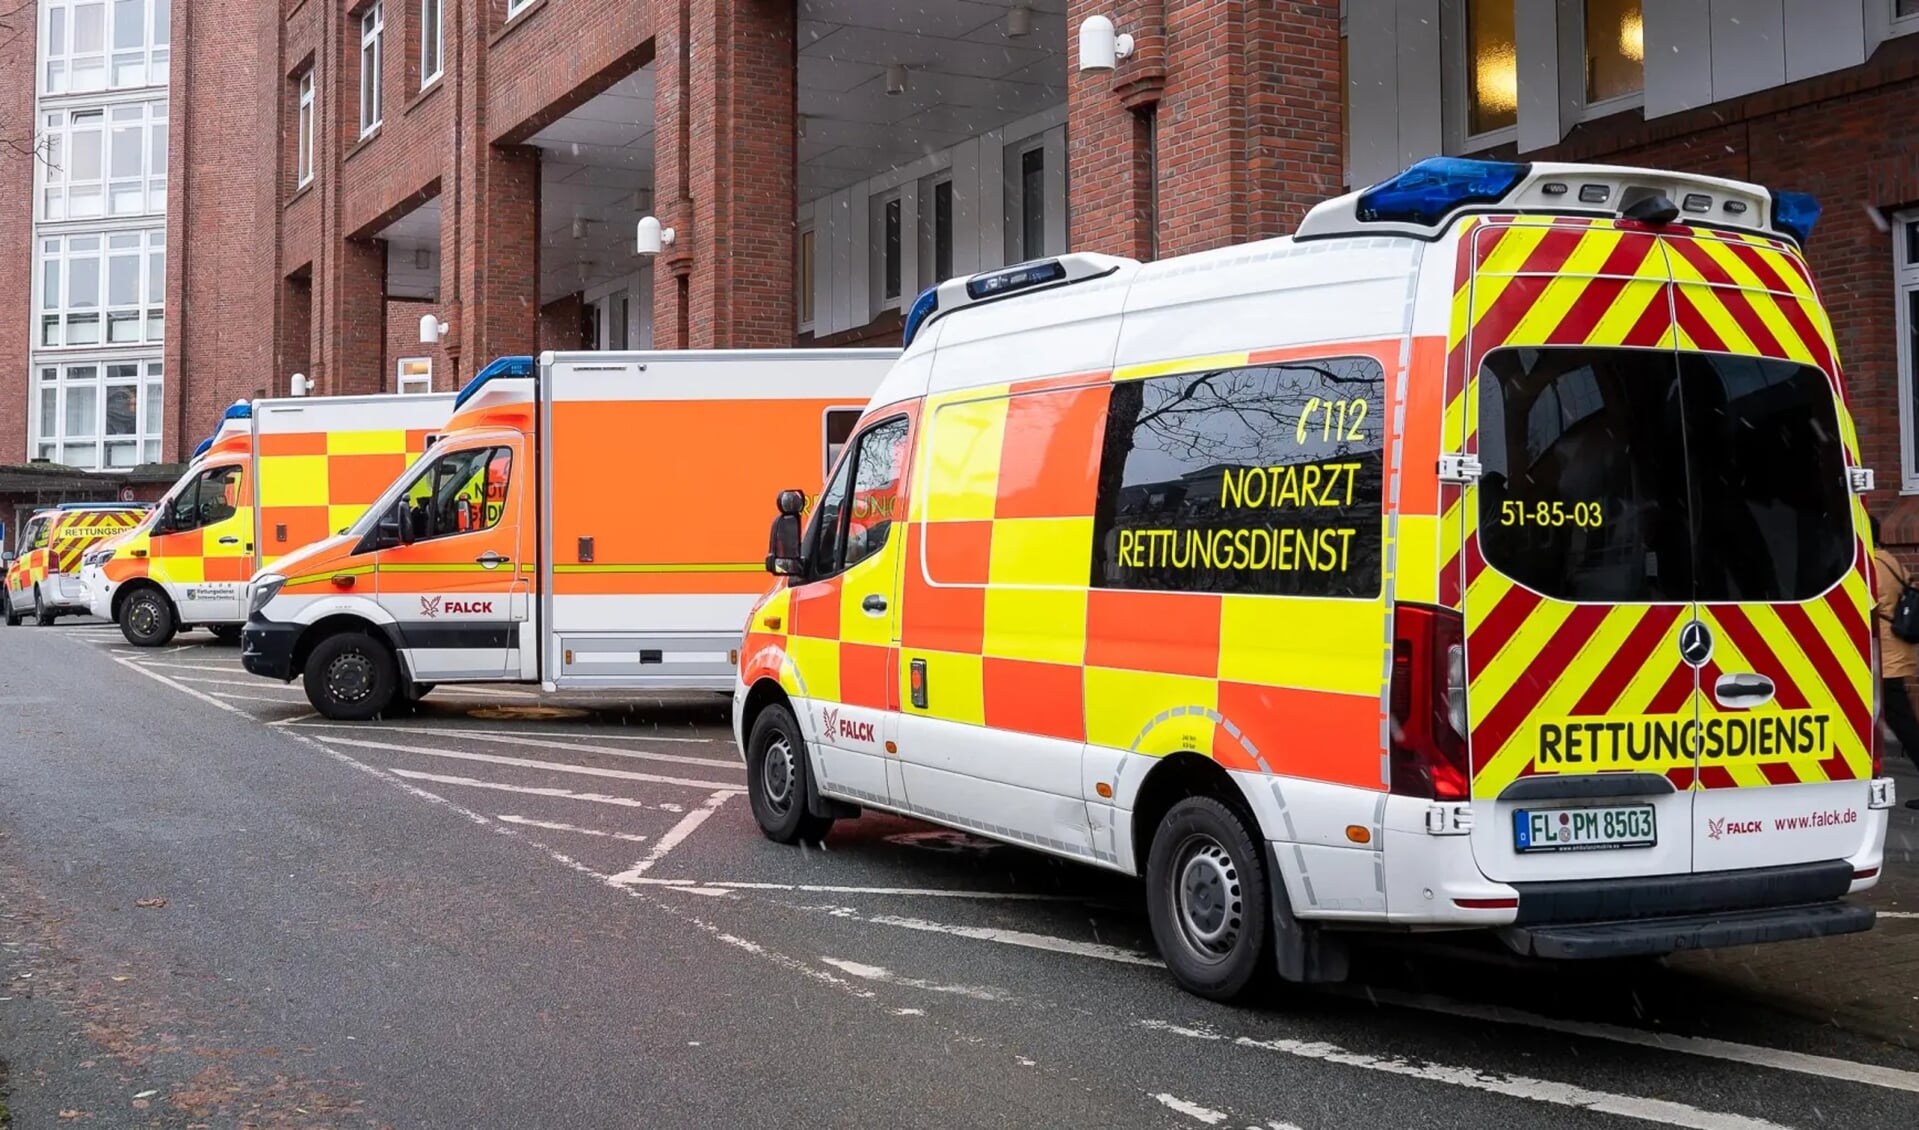 i Flensborg kan nu igen bemande ambulancerne - nyheder & baggrundstof fra Sydslesvig & grænselandet FLA